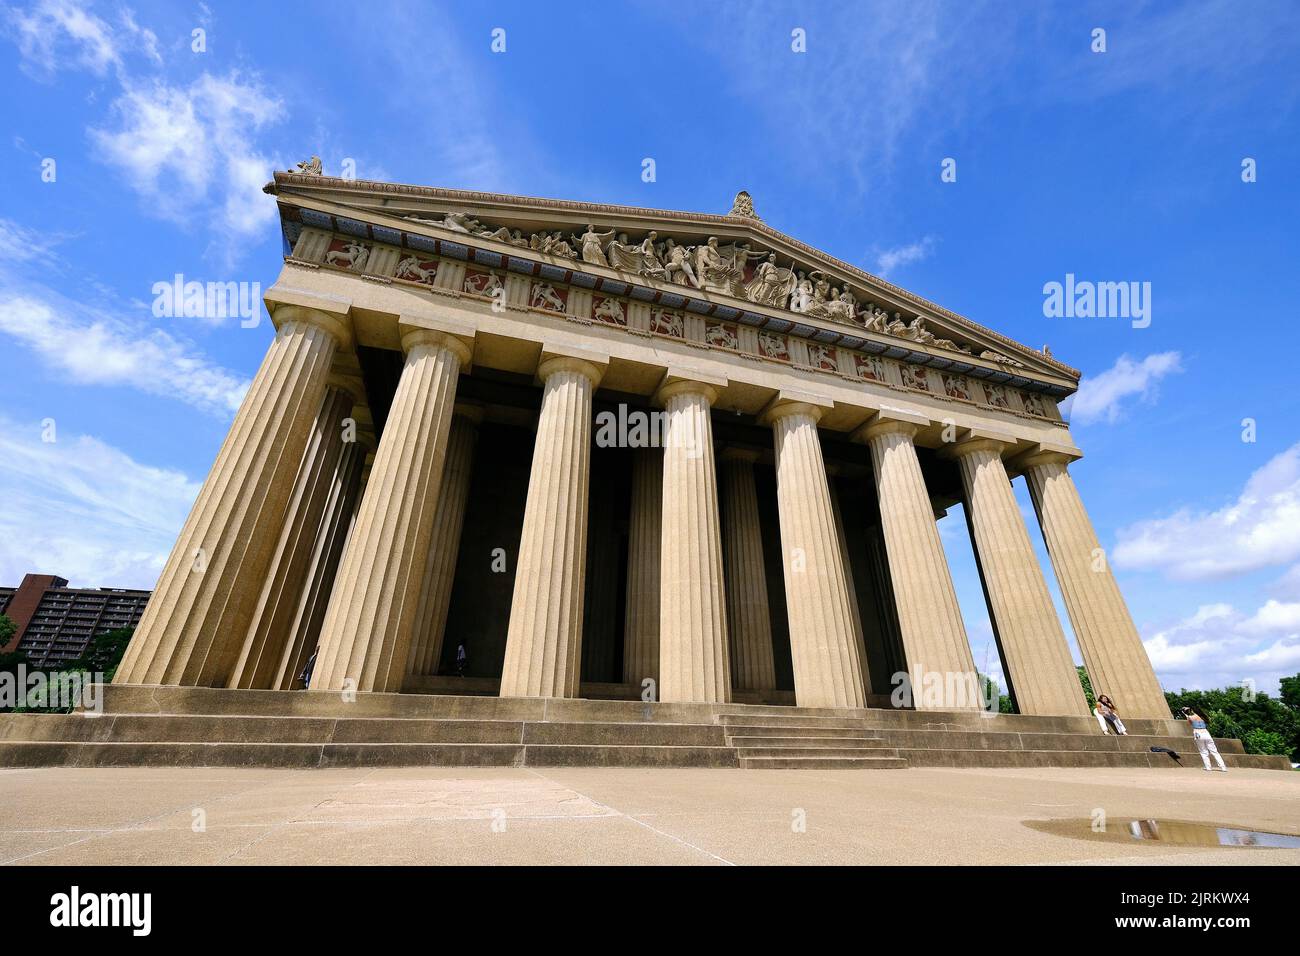 The Parthenon im Centennial Park; Nashville, Tennessee, Vereinigte Staaten von Amerika Stock Photo